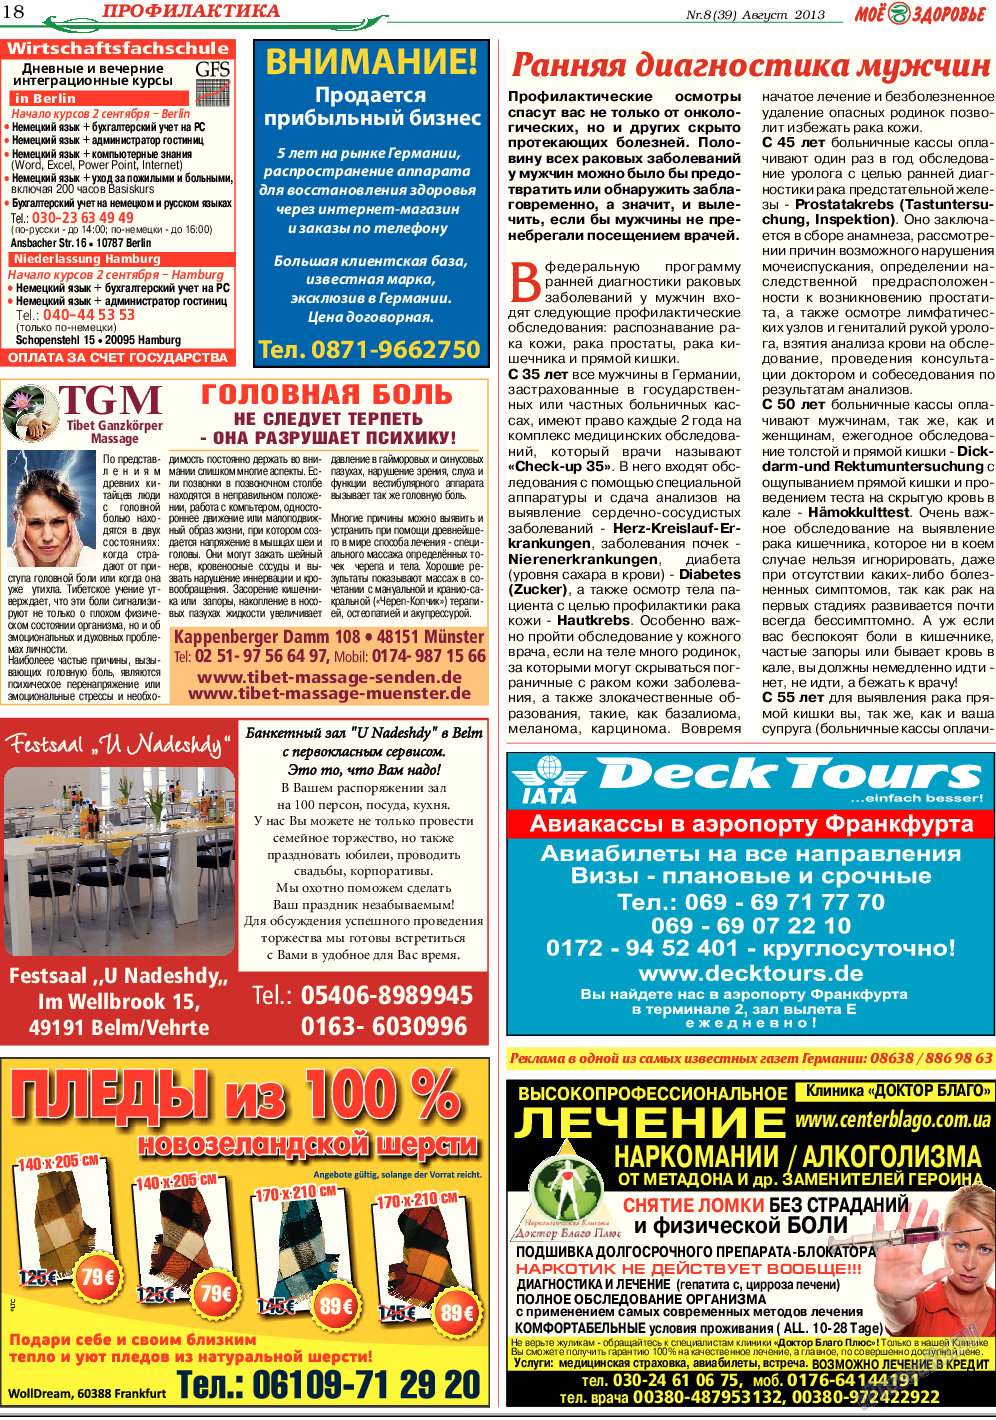 Кругозор, газета. 2013 №8 стр.18